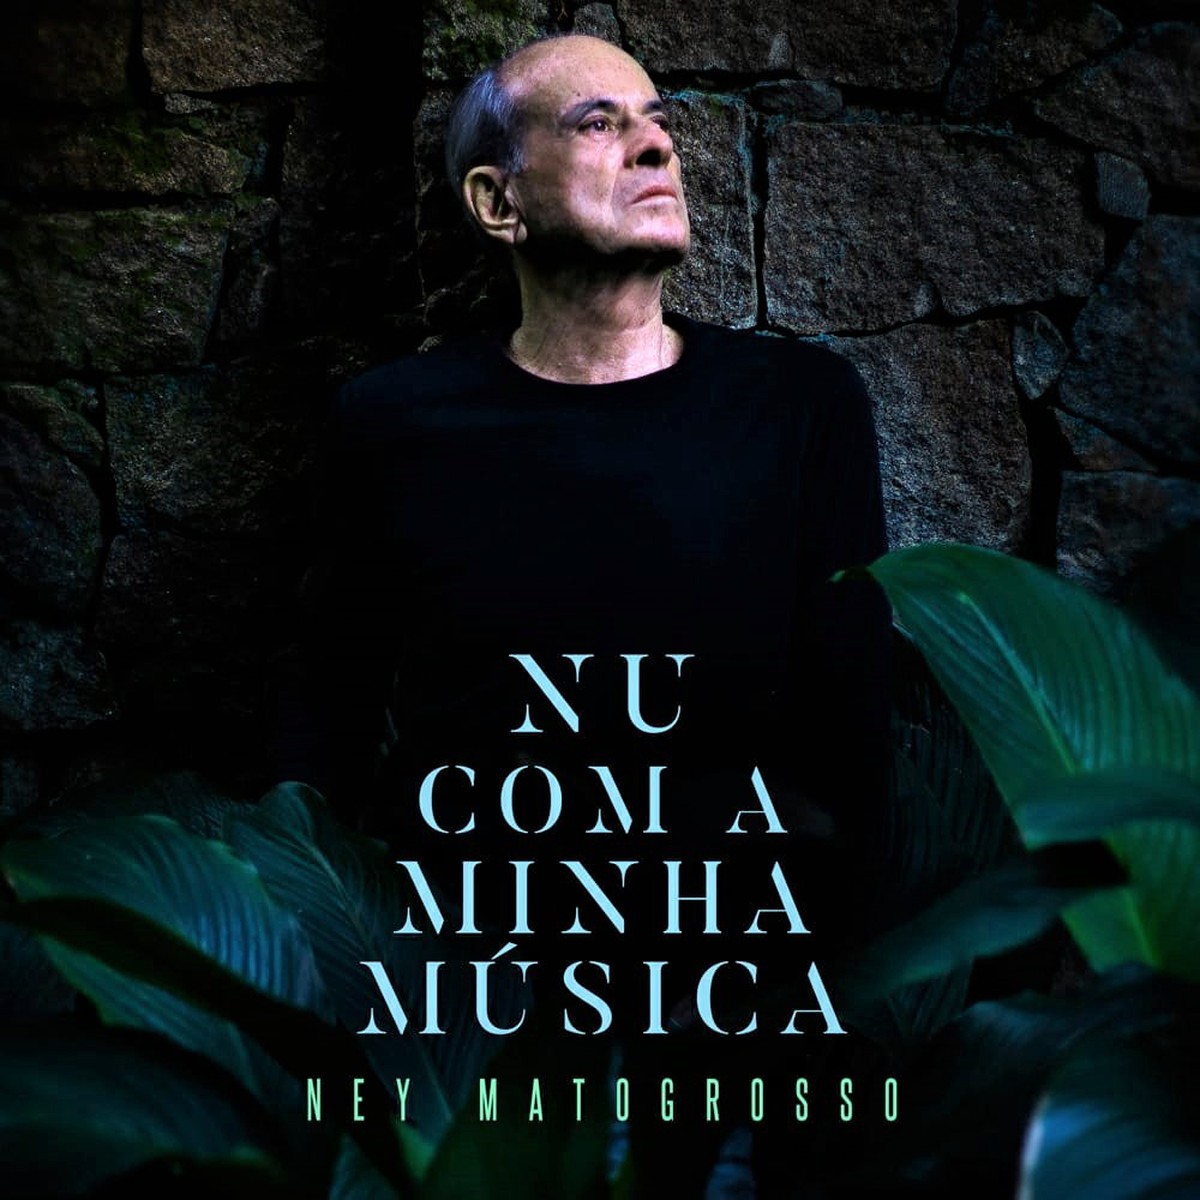 Ney Matogrosso revela a capa do EP em que canta Caetano Veloso, Lenine, Raul Seixas e o cubano Silvio Rodríguez | Blog do Mauro Ferreira